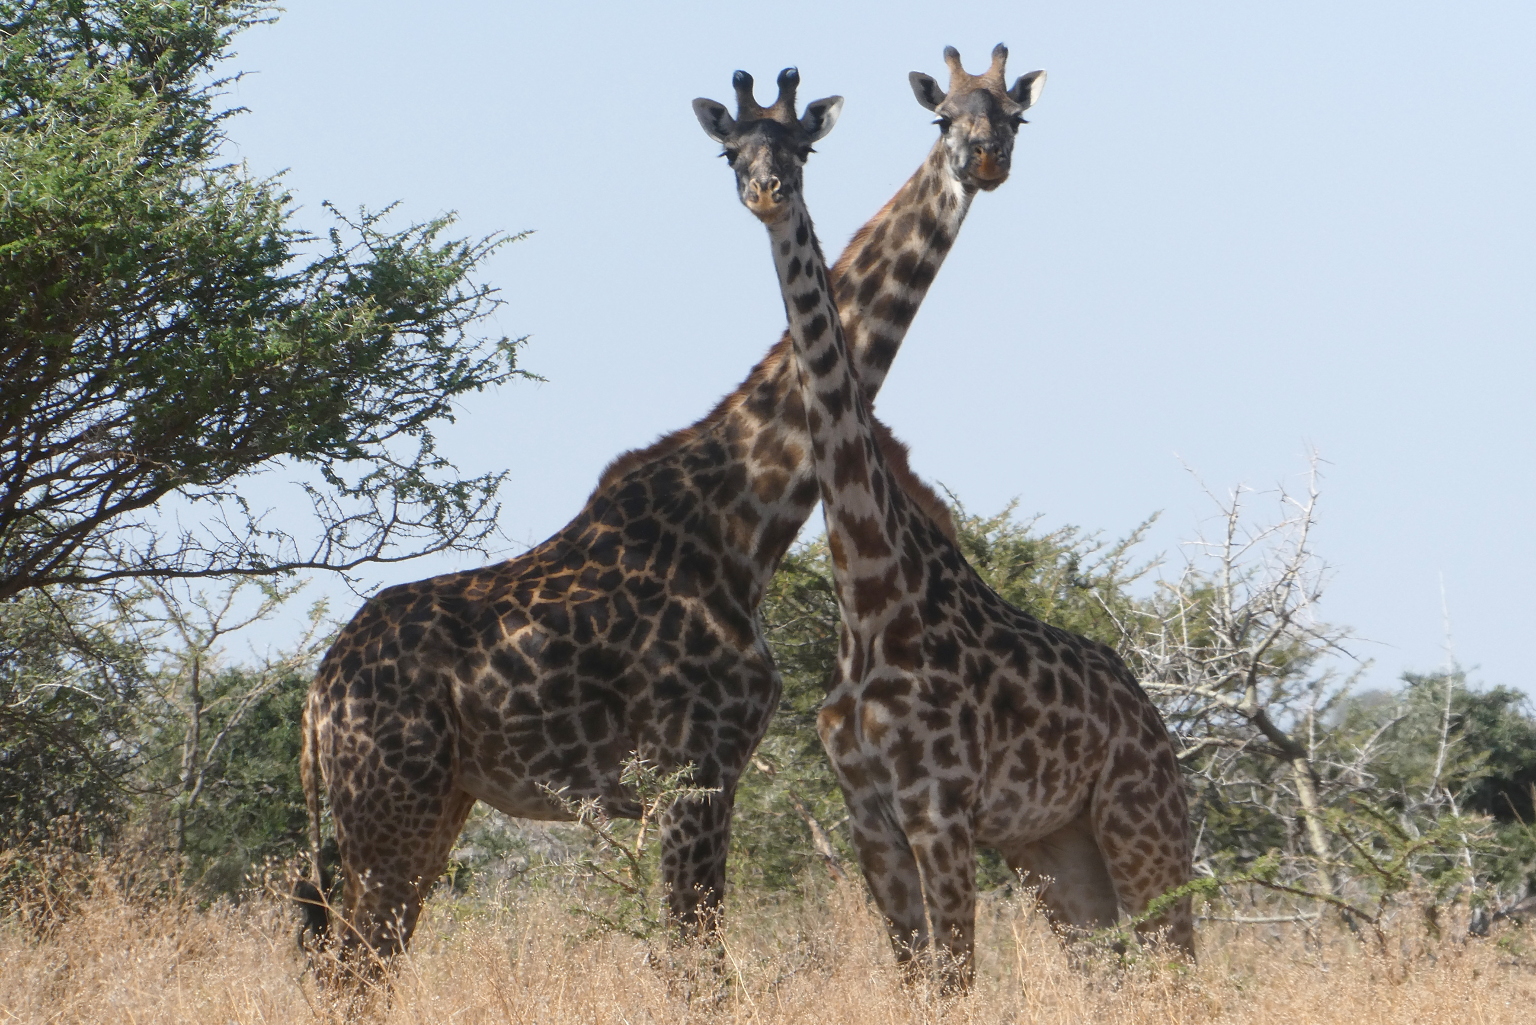 A pair of giraffes.